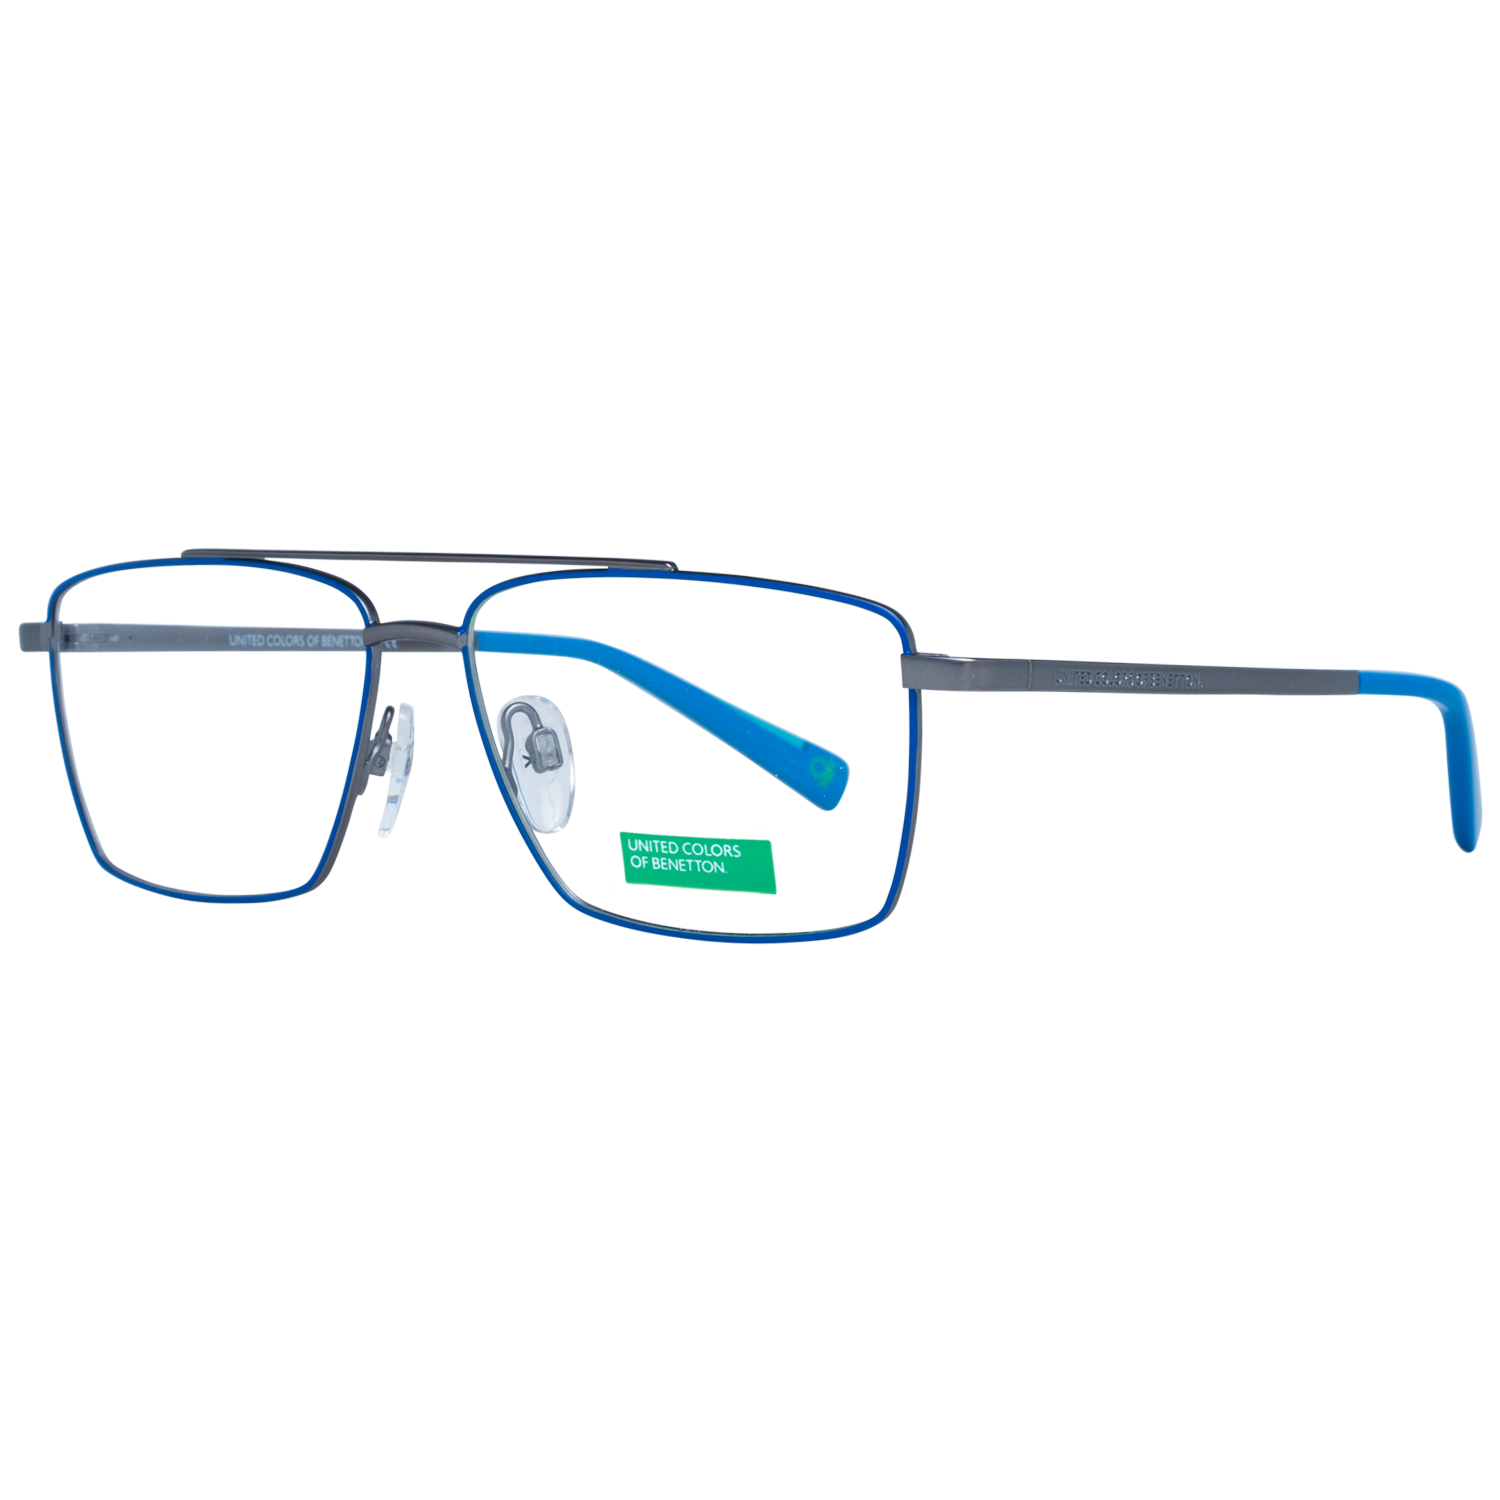 Benetton Frames Benetton Glasses Frames BEO3000 628 55 Eyeglasses Eyewear UK USA Australia 